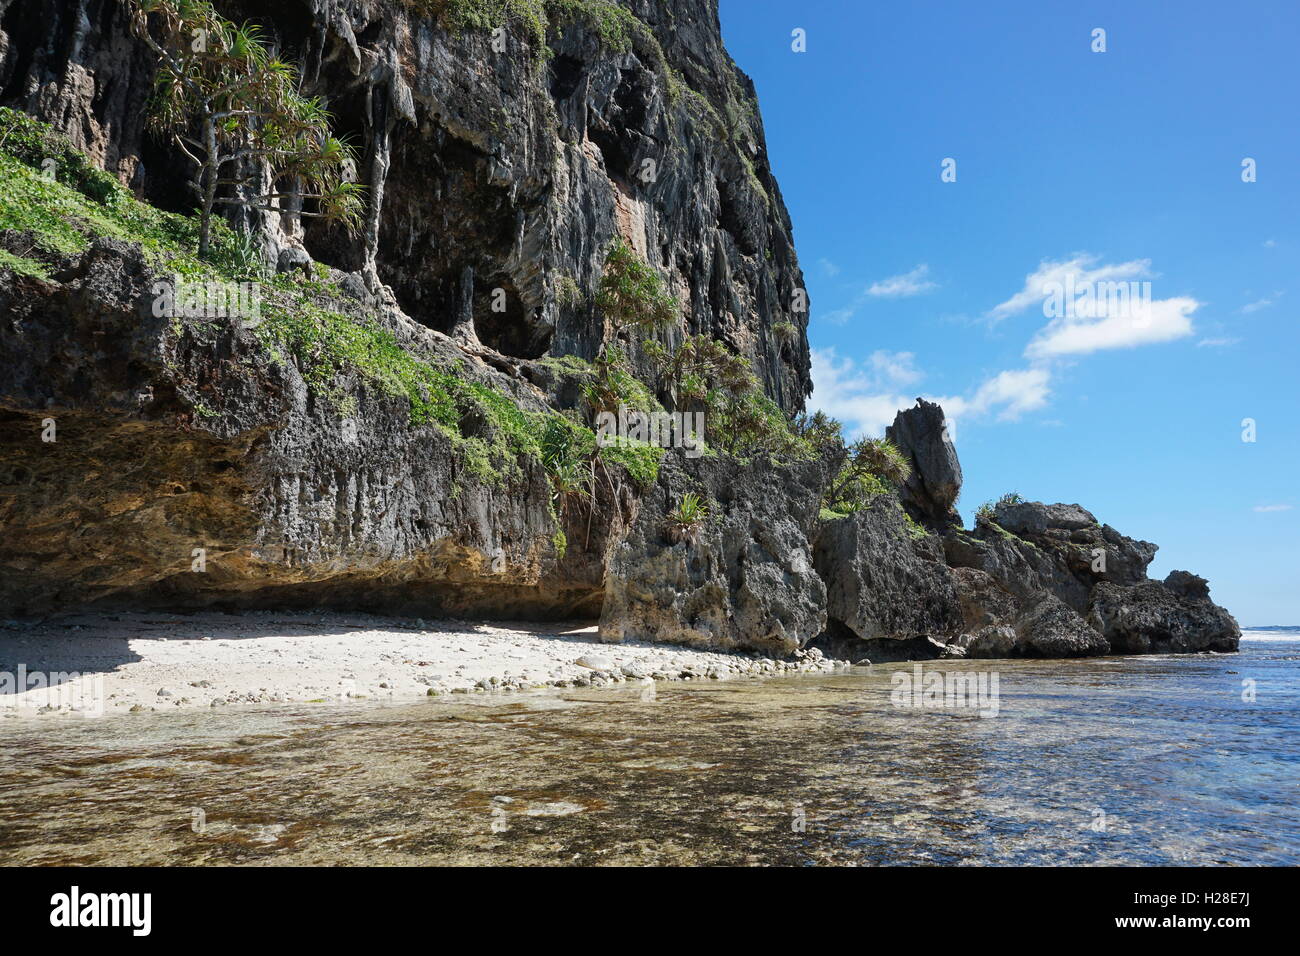 Acantilados de piedra caliza erosionada con cueva en la costa del océano Pacífico, Isla de Rurutu, austral archipiélago, Polinesia Francesa Foto de stock